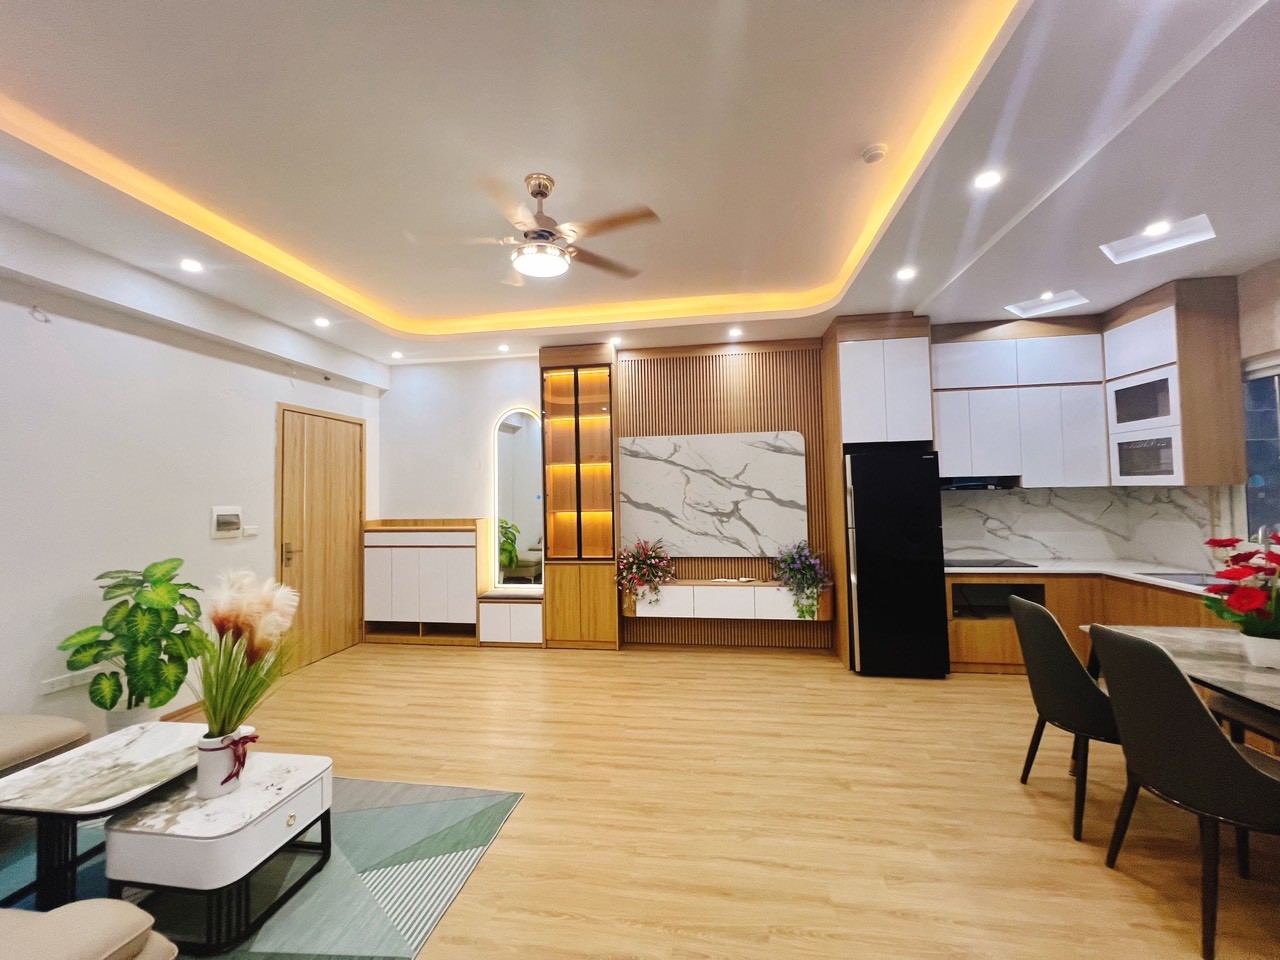 Cần bán căn hộ góc 2PN full nội thất, giá rẻ nhất tại KĐT Thanh Hà Cienco 5 3